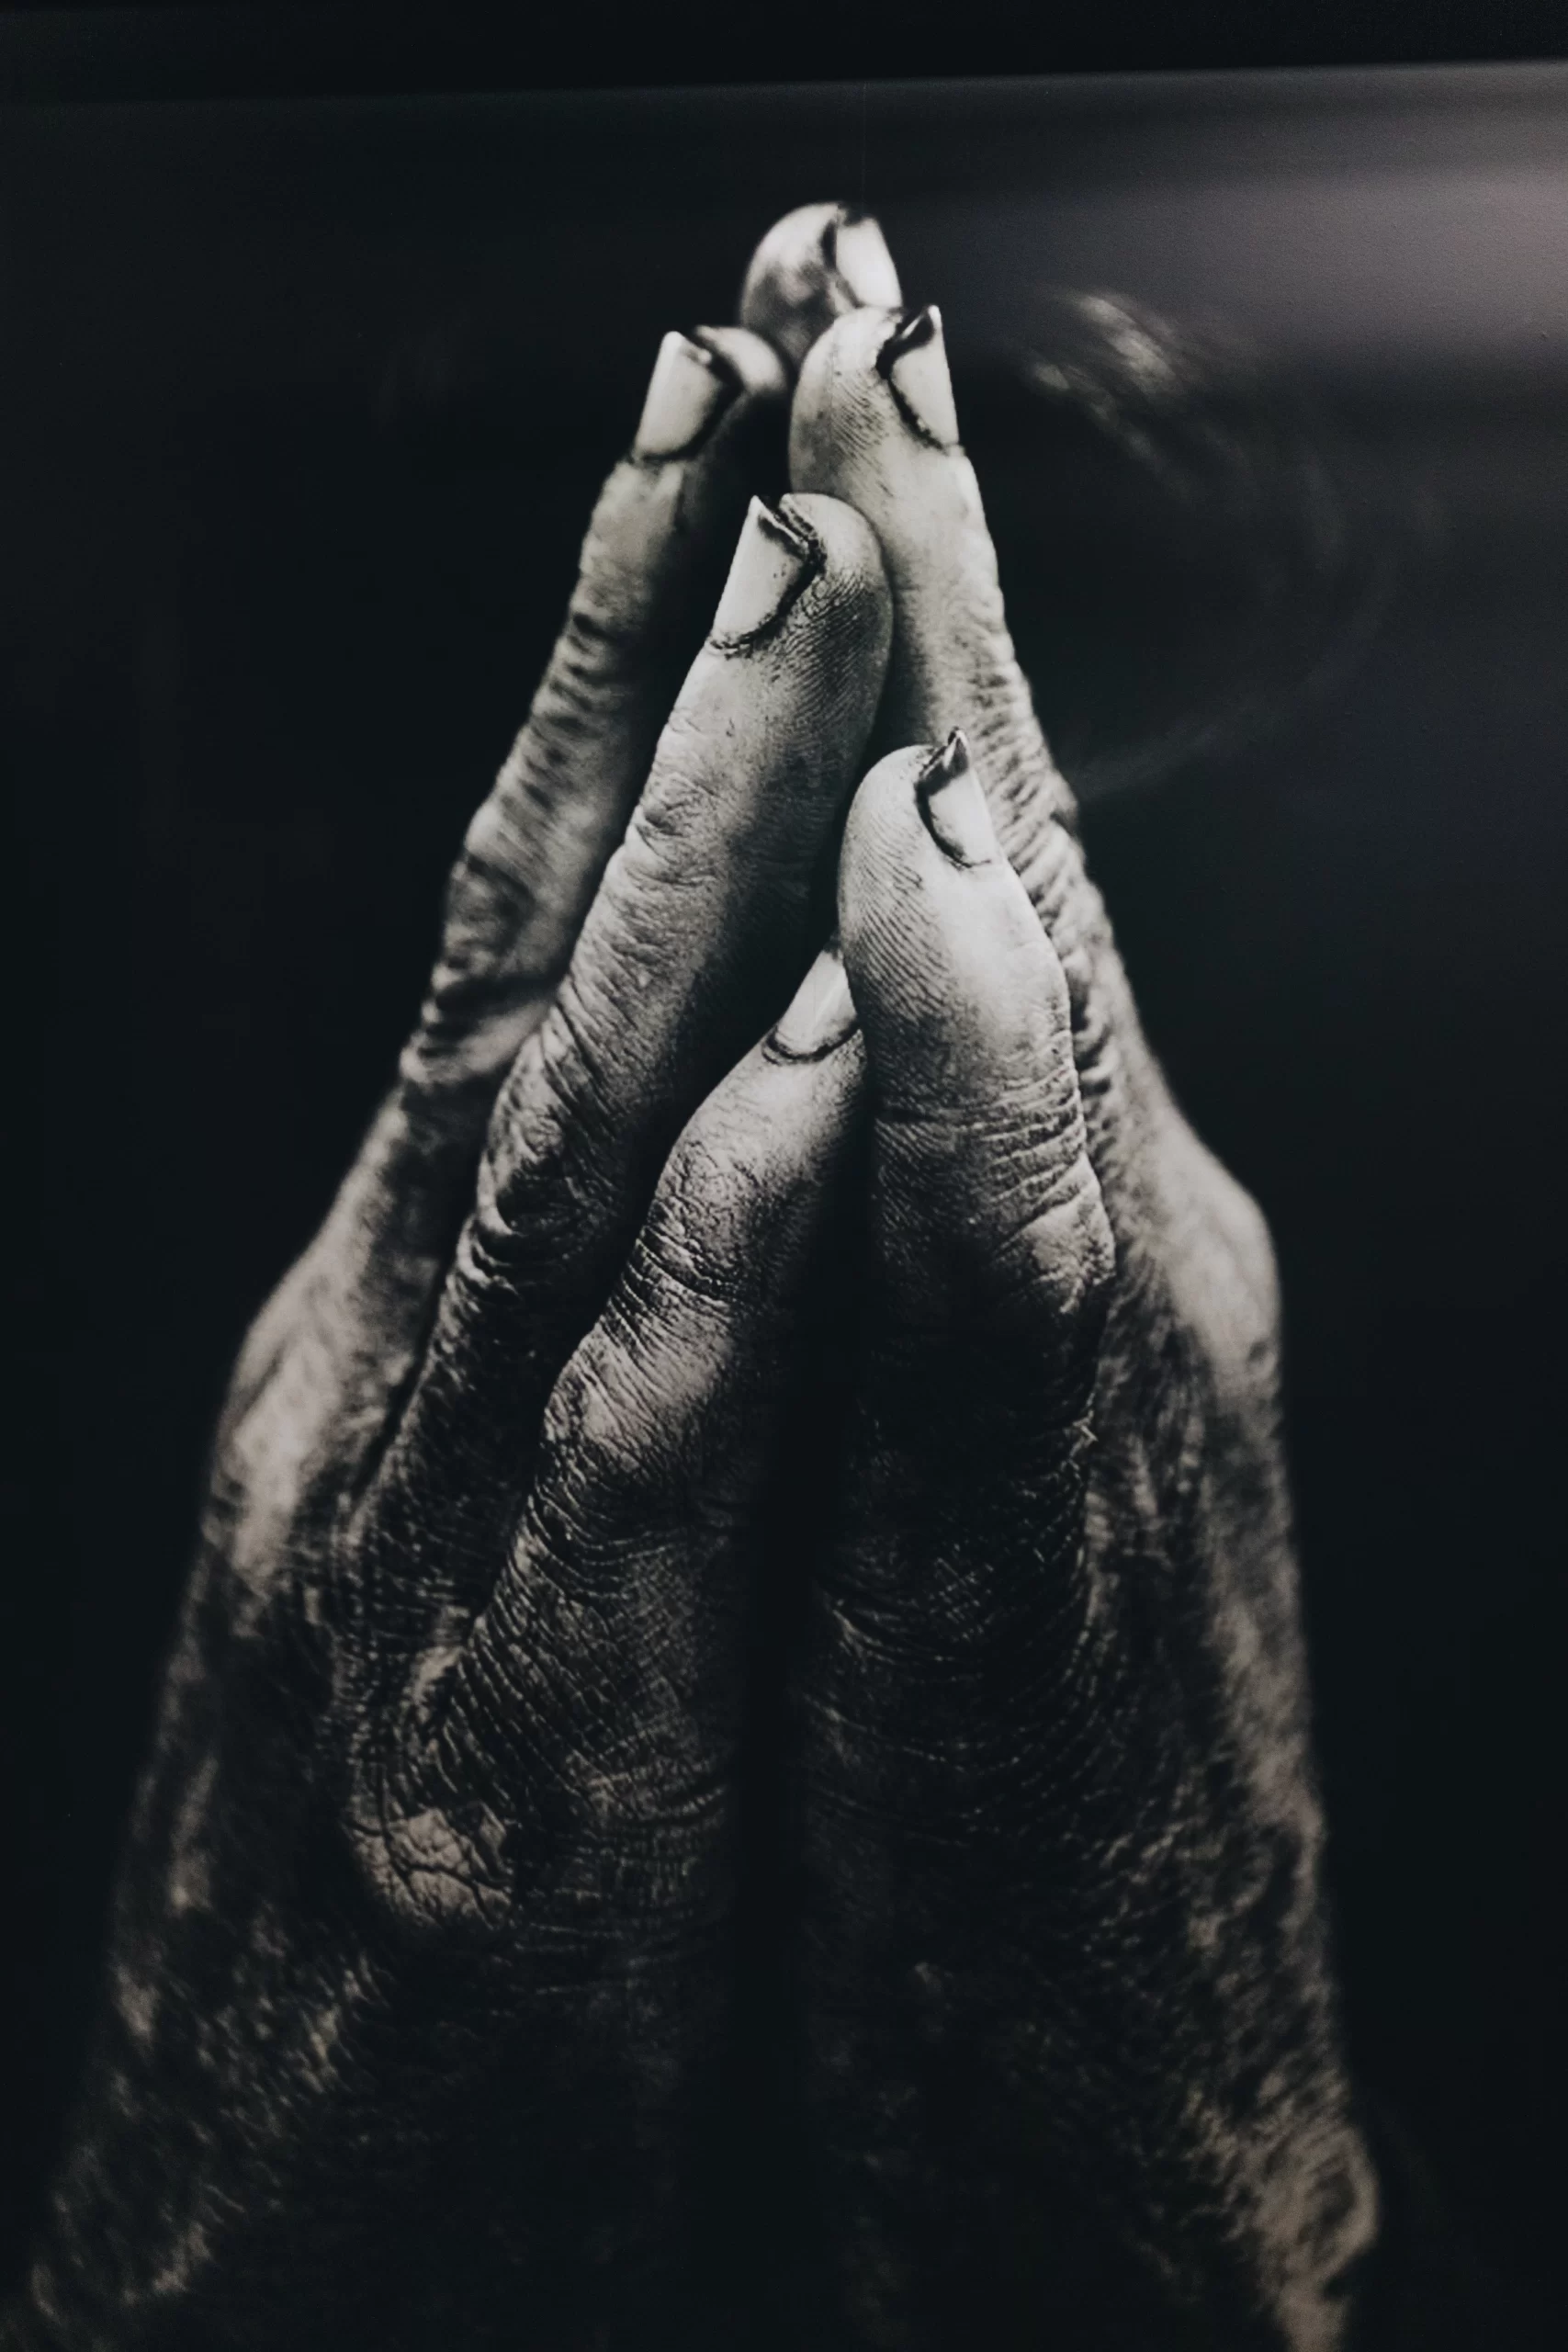 nathan-dumlao-Hands of workman clasped in prayer-unsplash